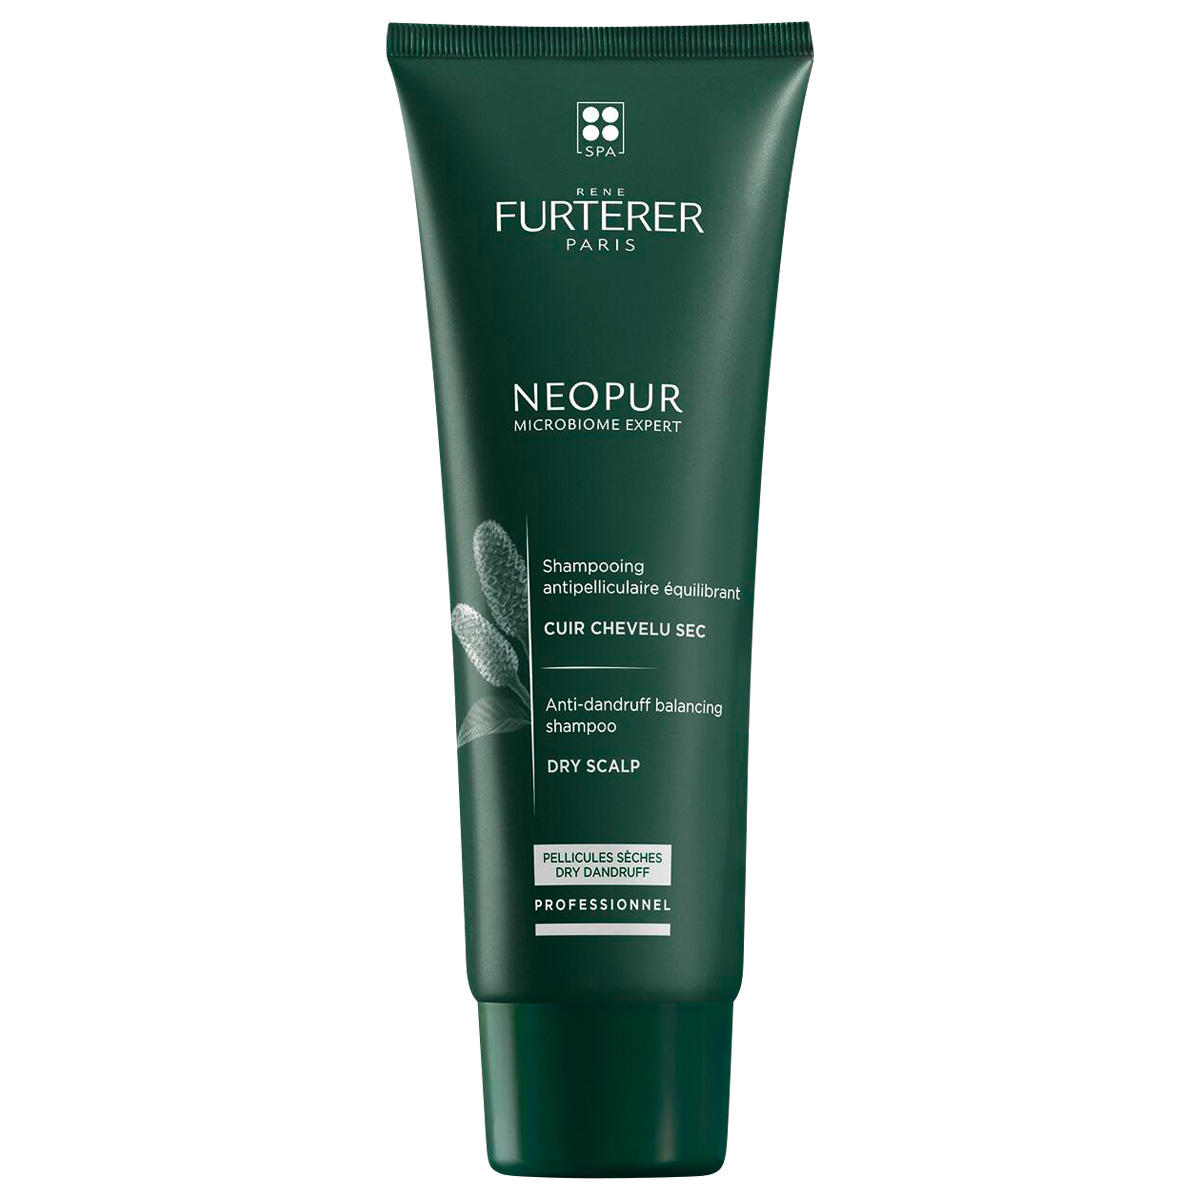 René Furterer Neopur Professionnel Shampoo antiforfora equilibrante per cuoio capelluto secco 250 ml - 1